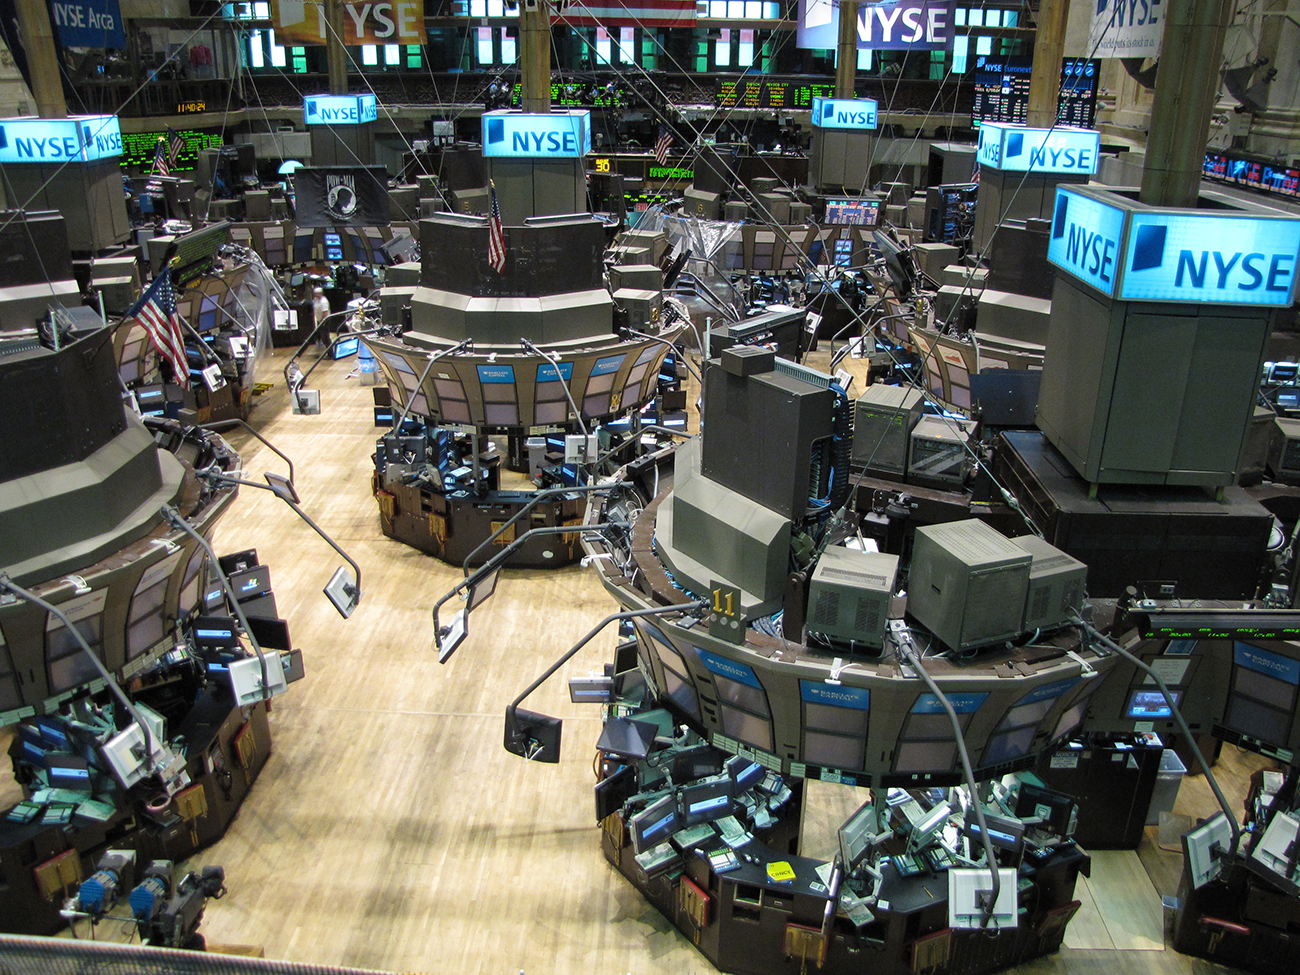 Une photographie montre la Bourse de New York. L'espace intérieur dispose de nombreux terminaux, chacun étant recouvert d'ordinateurs et d'écrans d'affichage. En arrière-plan, des écrans montrent les actions et les cours.